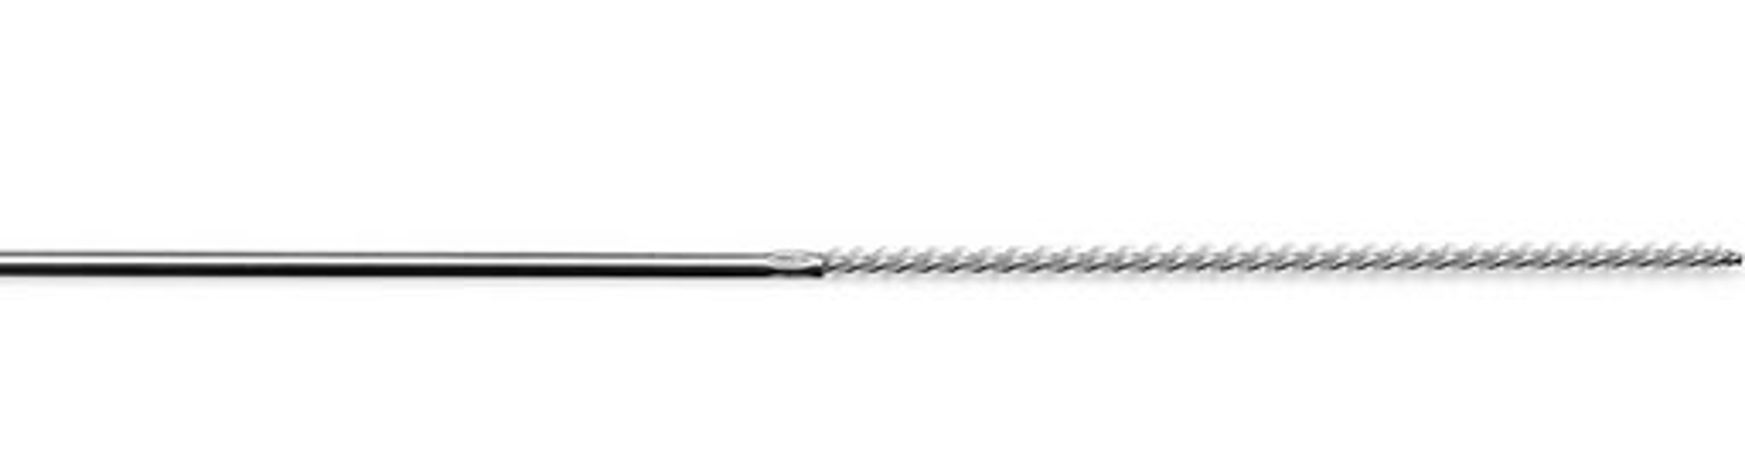 Key-SurgicaL - Model BR-31-118 - Bone Reamer Brush